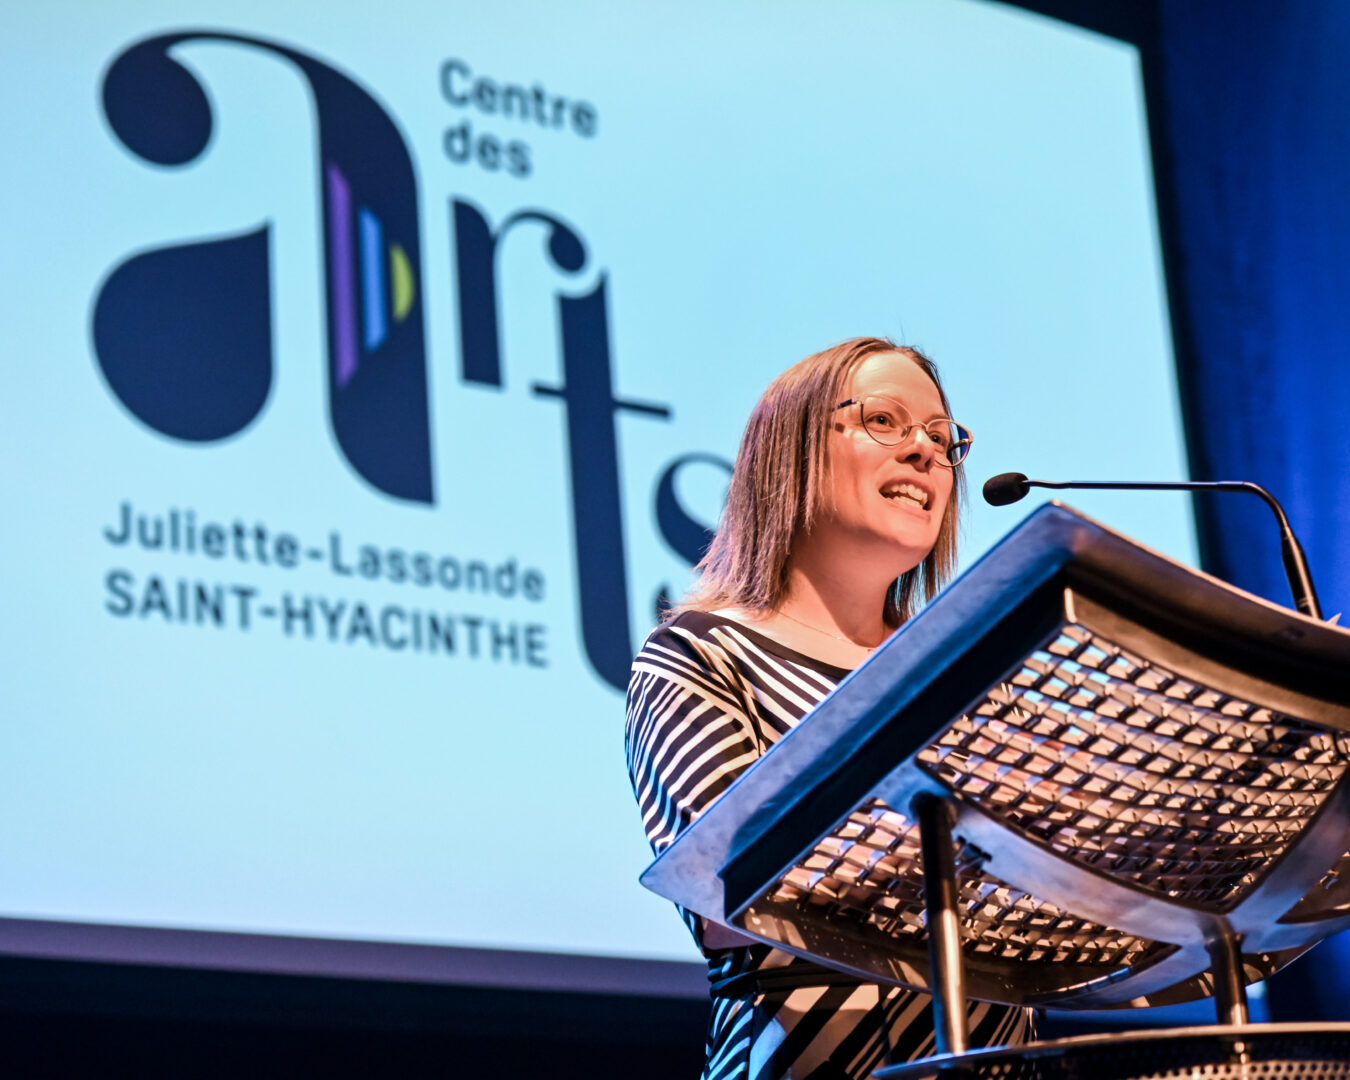 Anouk Charbonneau, directrice générale par intérim, a dévoilé le nouveau logo du Centre des arts Juliette-Lassonde. Photo François Larivière | Le Courrier ©